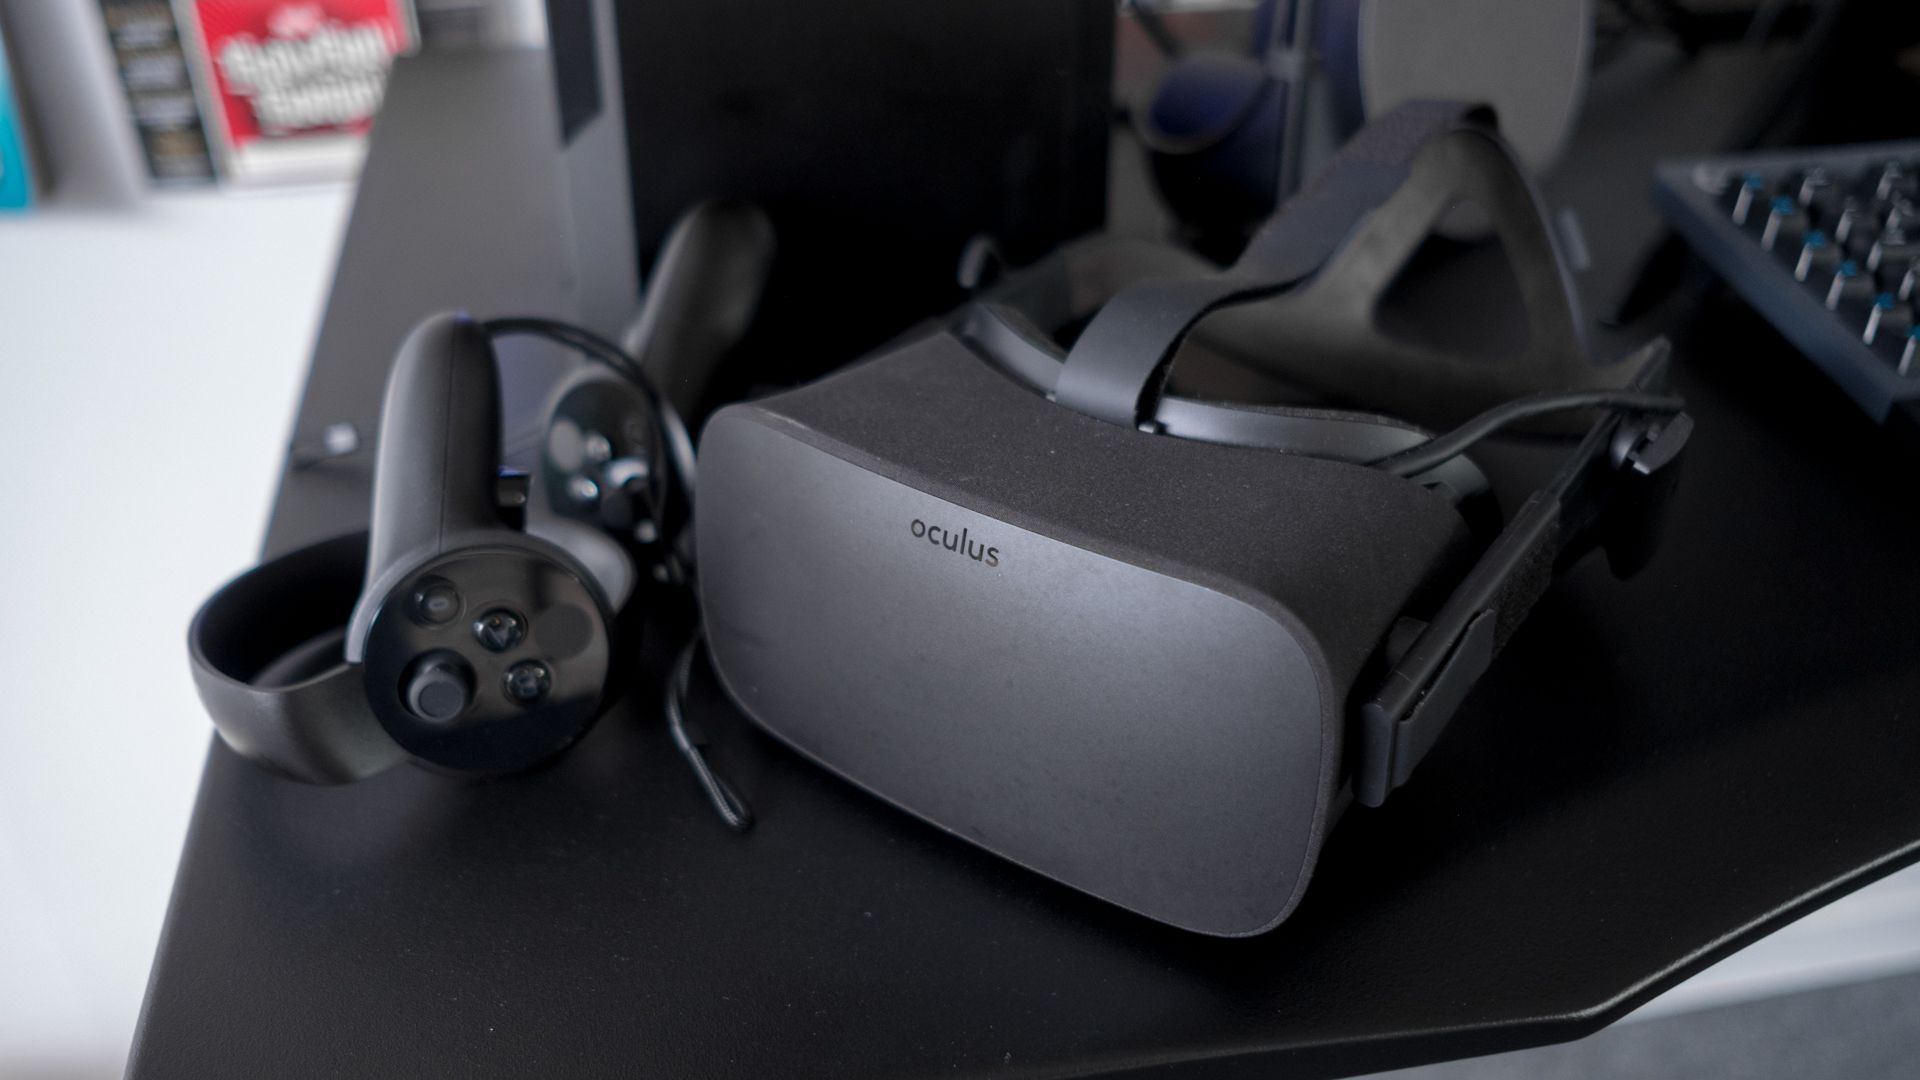 Best Oculus Rift Games The 13 Best Oculus Rift Games You Need To Play Techradar